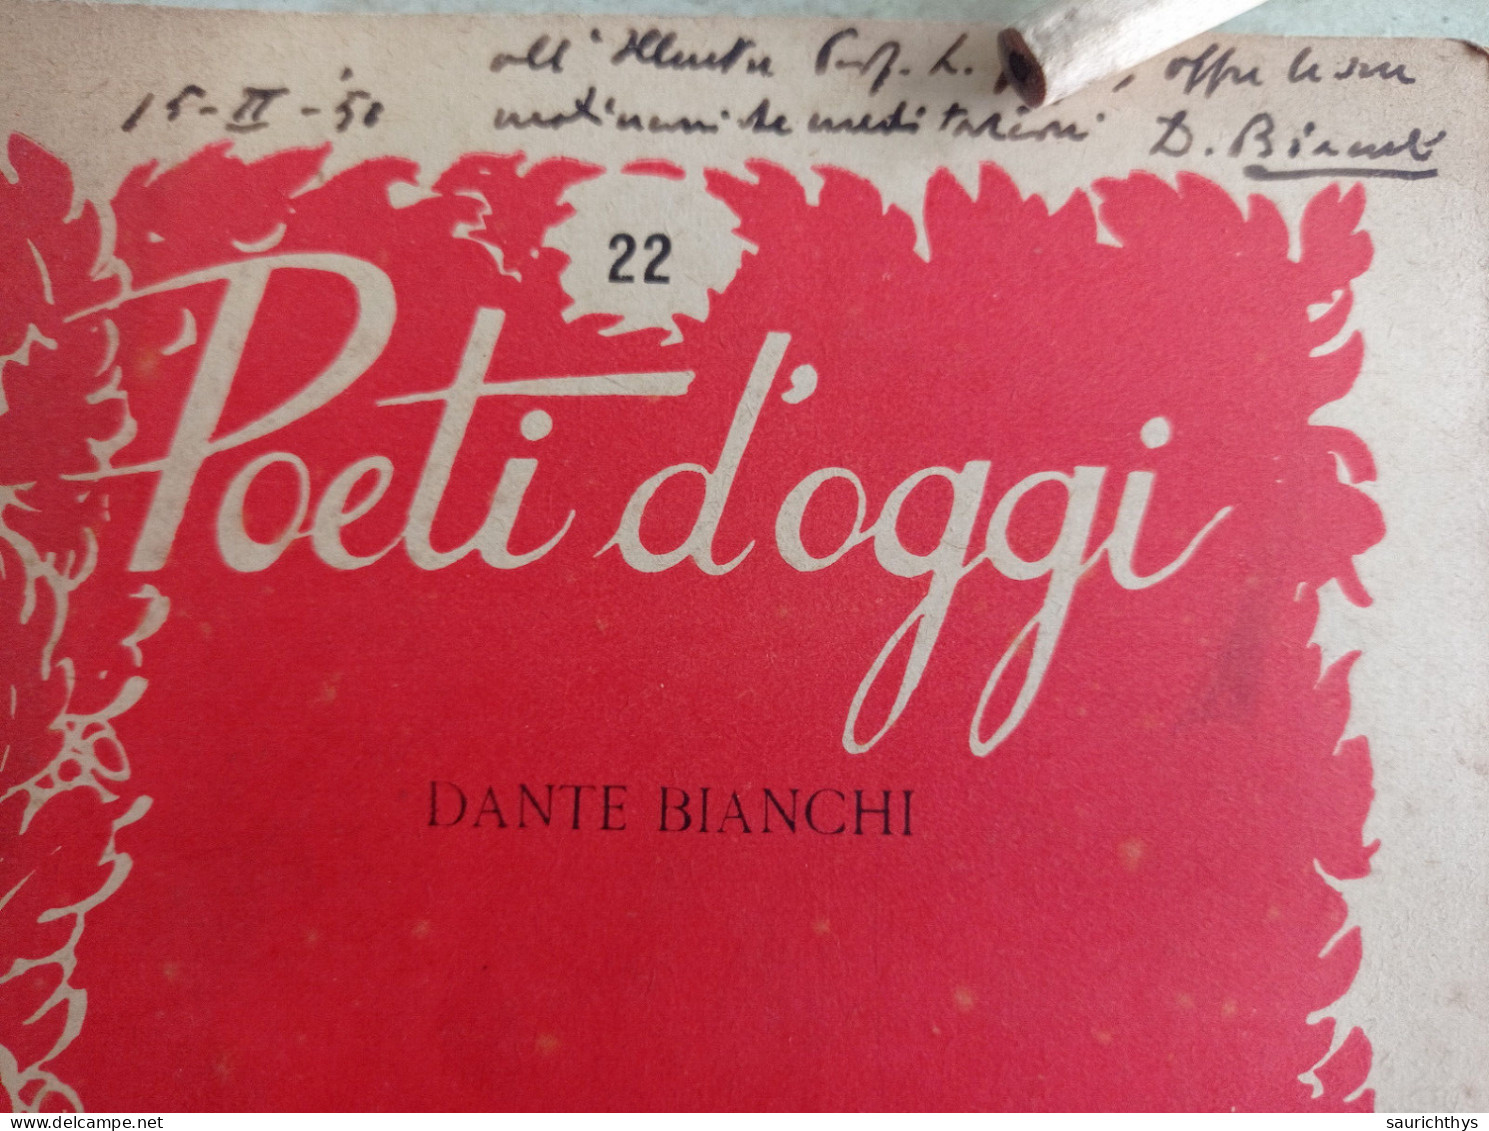 Poeti D'oggi Stralci Gastaldi Editore 1949 Autografo Di Dante Bianchi A Noto Accademico - Poetry